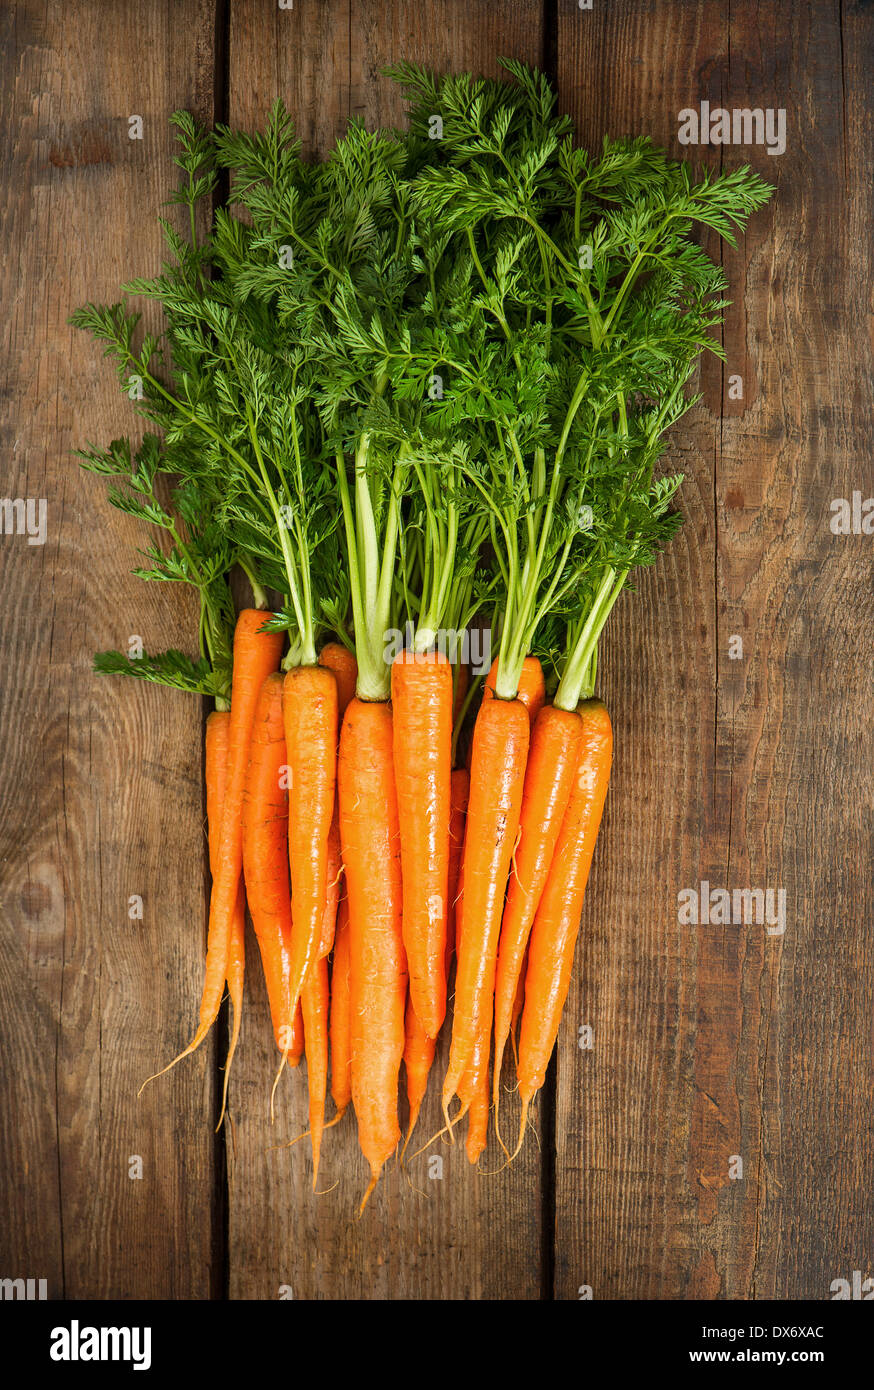 Botte de carottes fraîches avec des feuilles vertes sur fond de bois. Légume. La Nutrition. Les ingrédients des aliments crus Banque D'Images